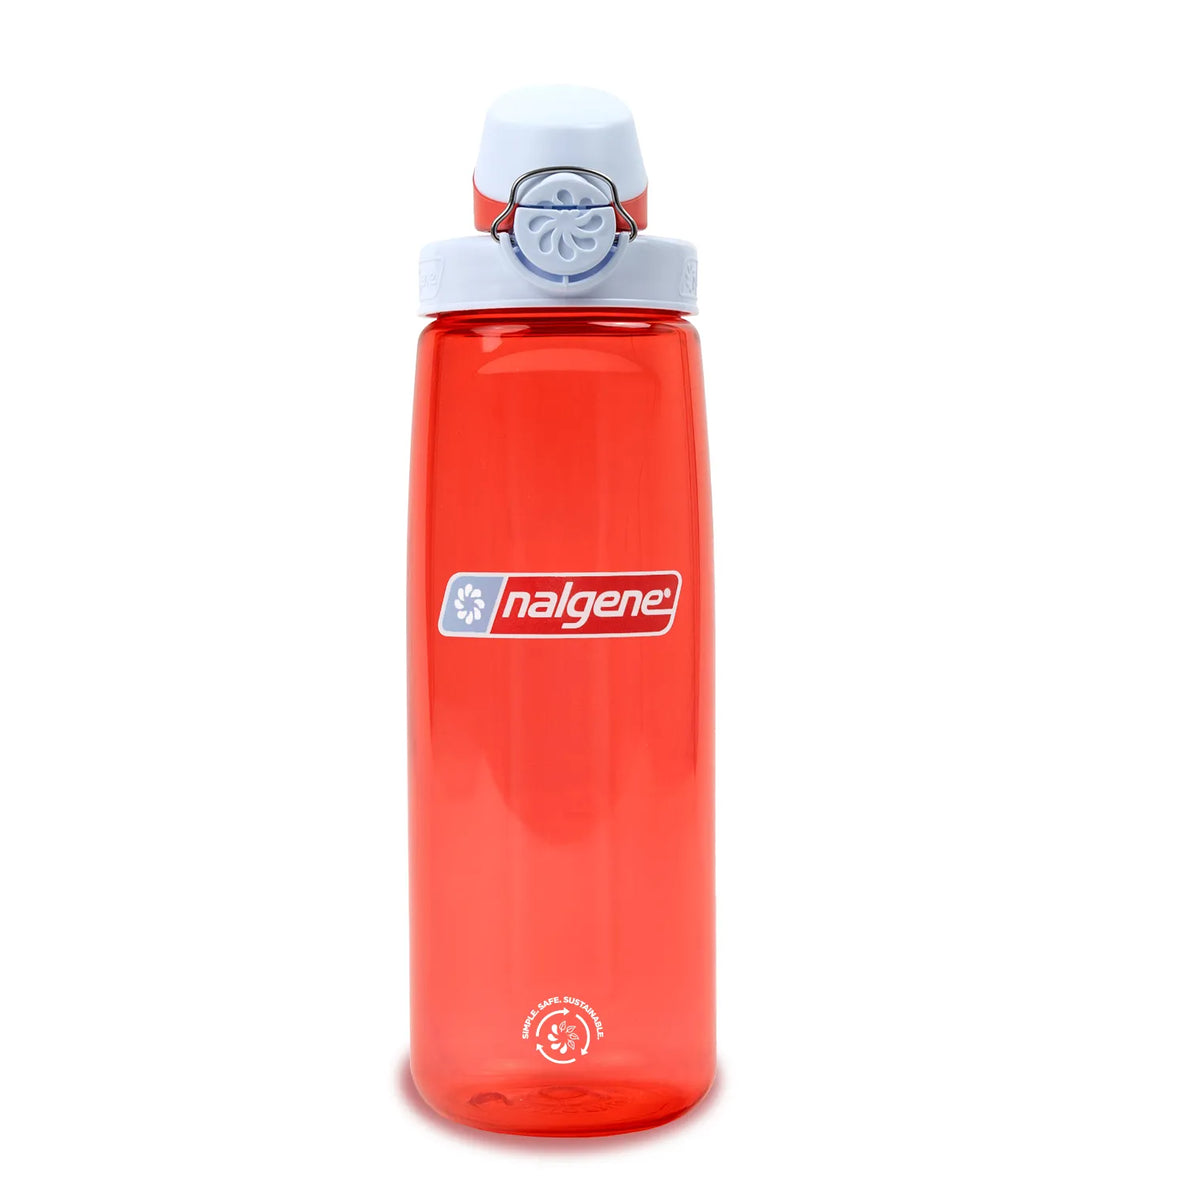 Nalgene 700ml Sustain OTF Water Bottle - Coral, Frost Cap